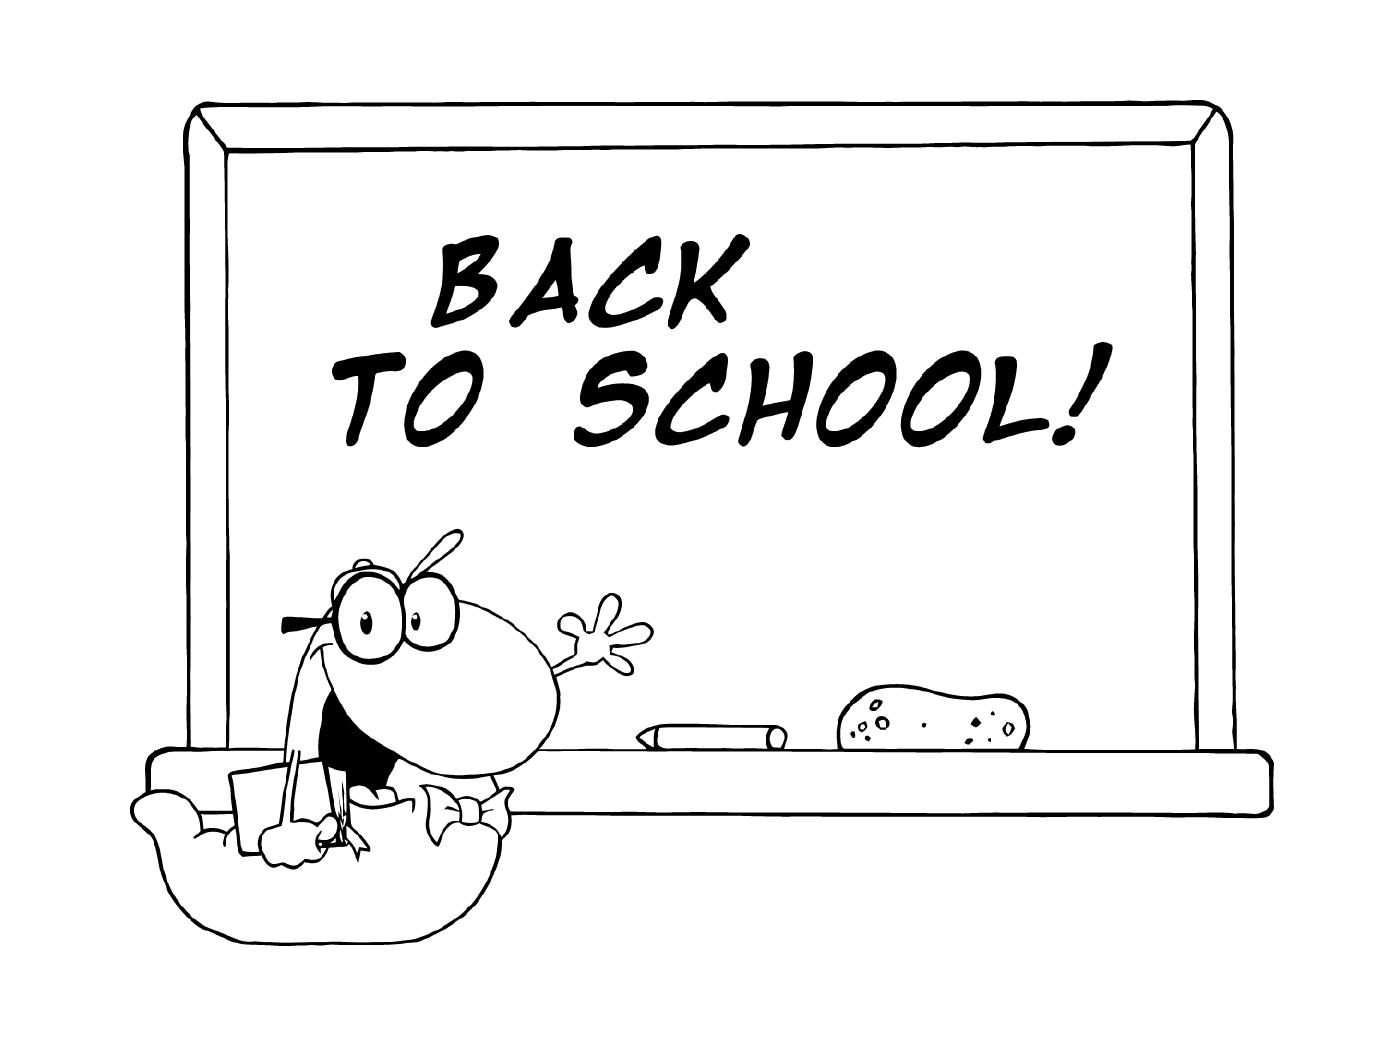  العودة إلى المدرسة، معلِّم الرسم 